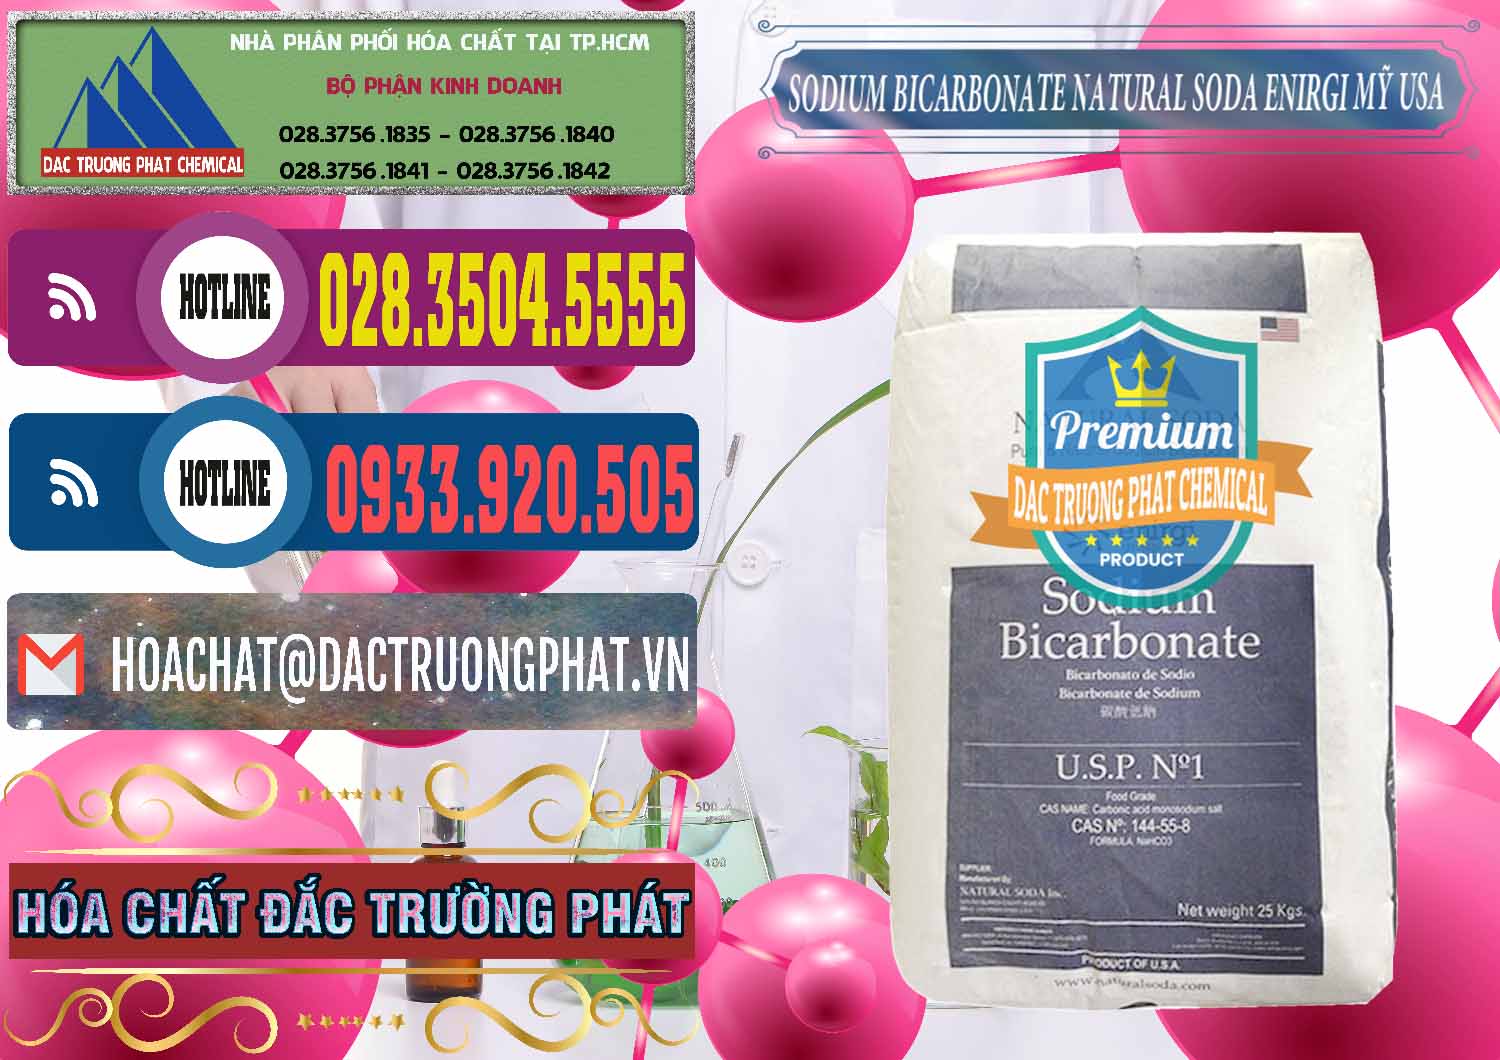 Cty nhập khẩu - bán Sodium Bicarbonate – Bicar NaHCO3 Food Grade Natural Soda Enirgi Mỹ USA - 0257 - Chuyên nhập khẩu ( cung cấp ) hóa chất tại TP.HCM - muabanhoachat.com.vn